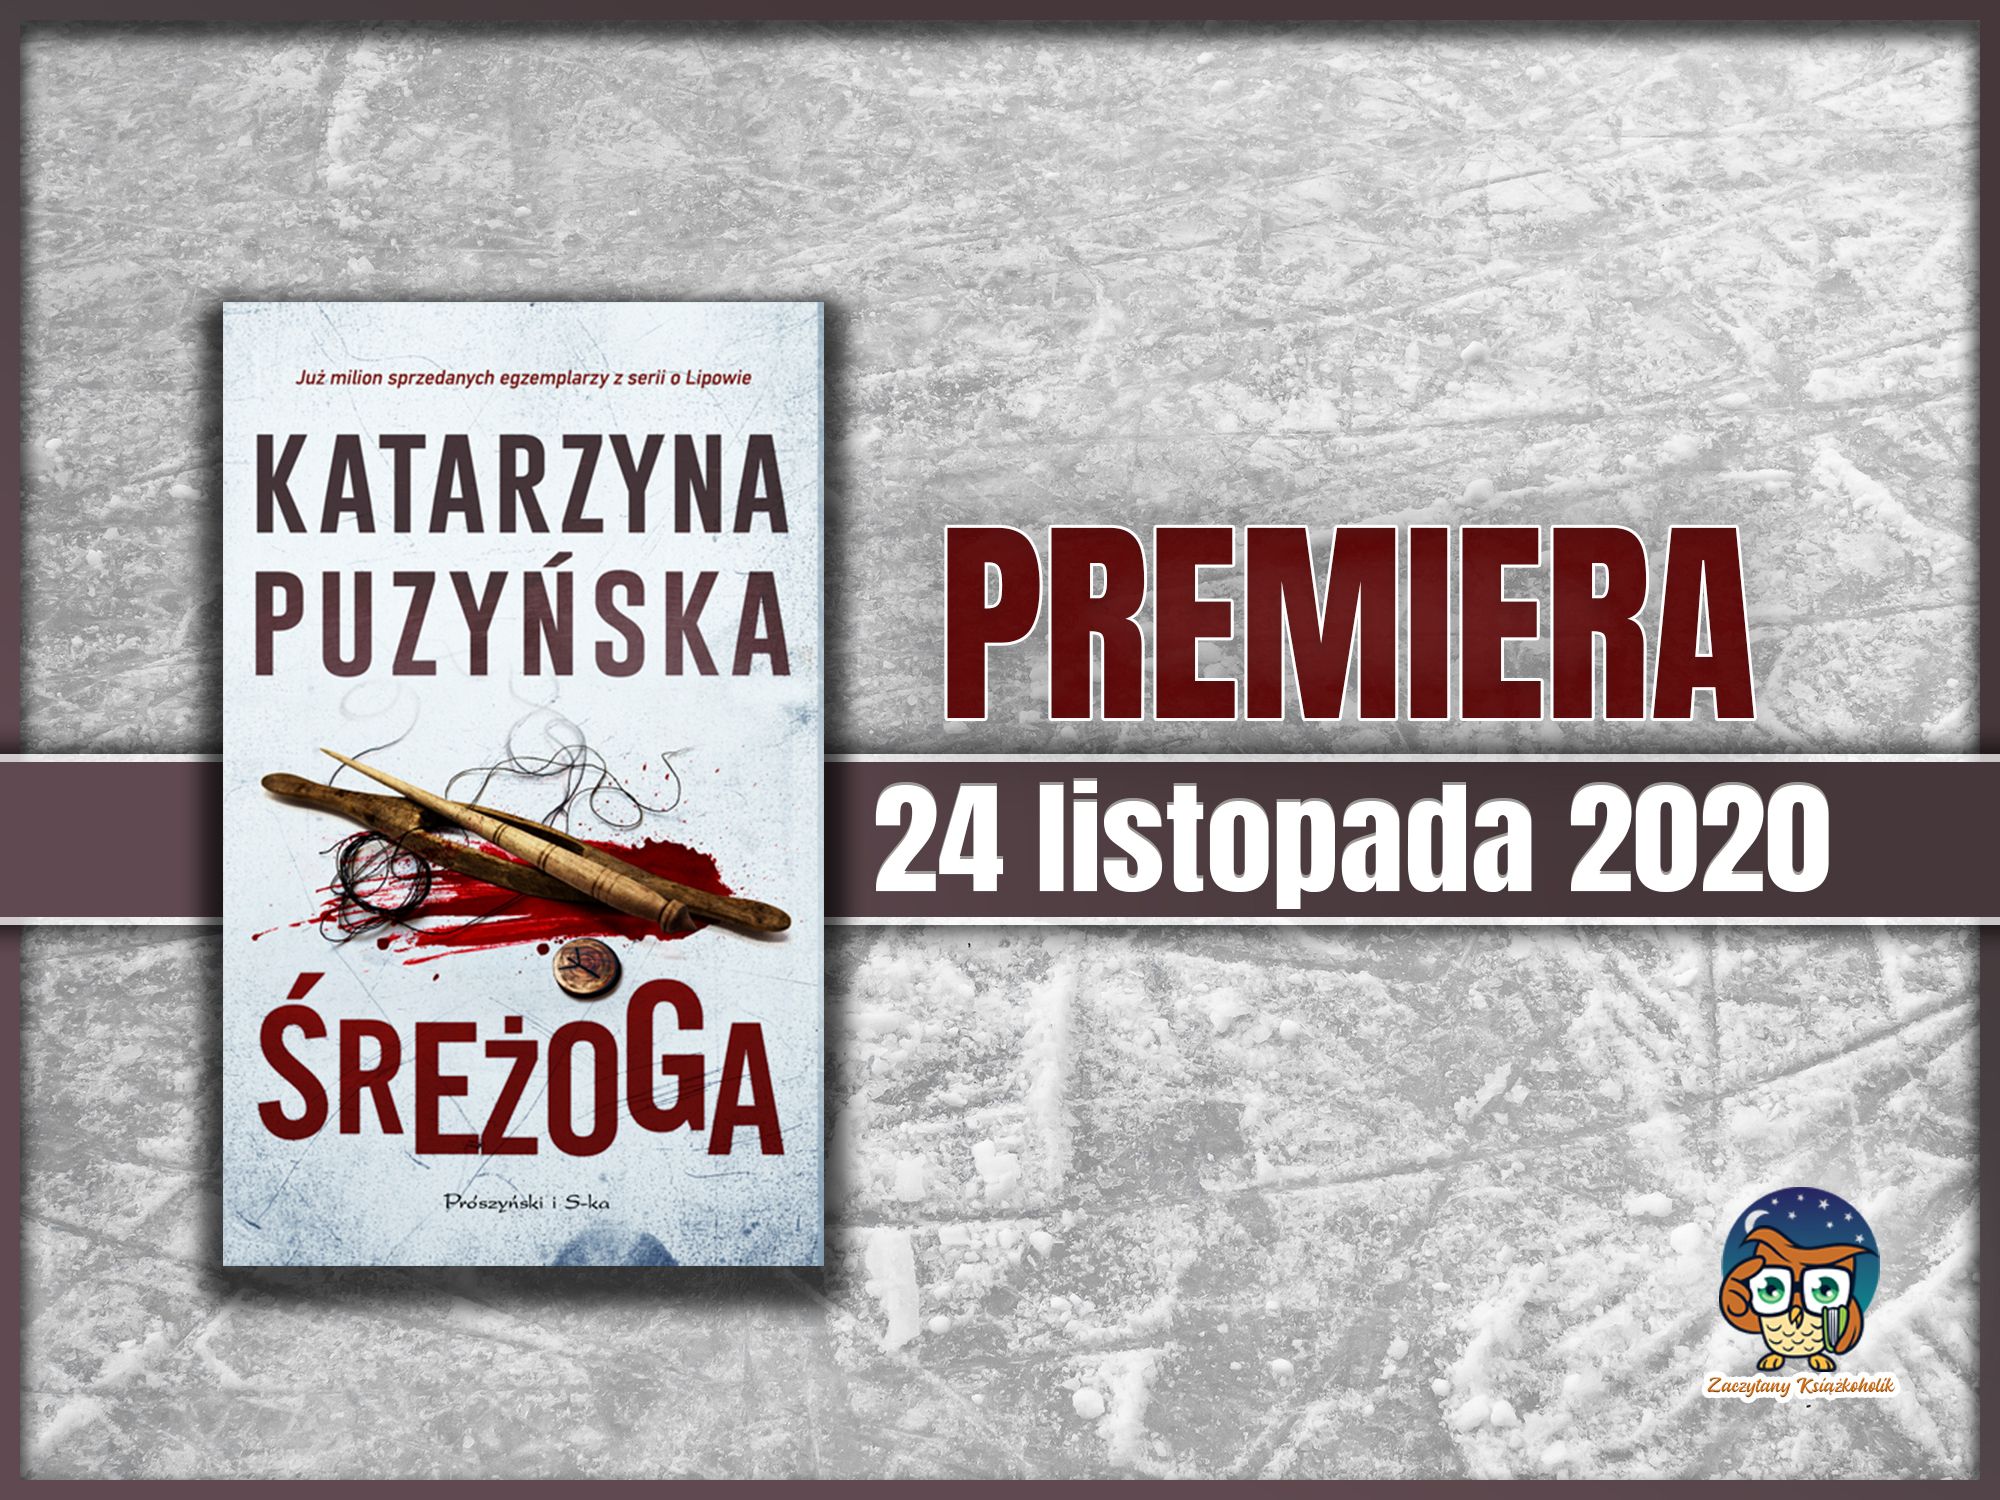 Śreżoga, Katarzyna Puzyńska, zaczytanyksiazkoholik.pl